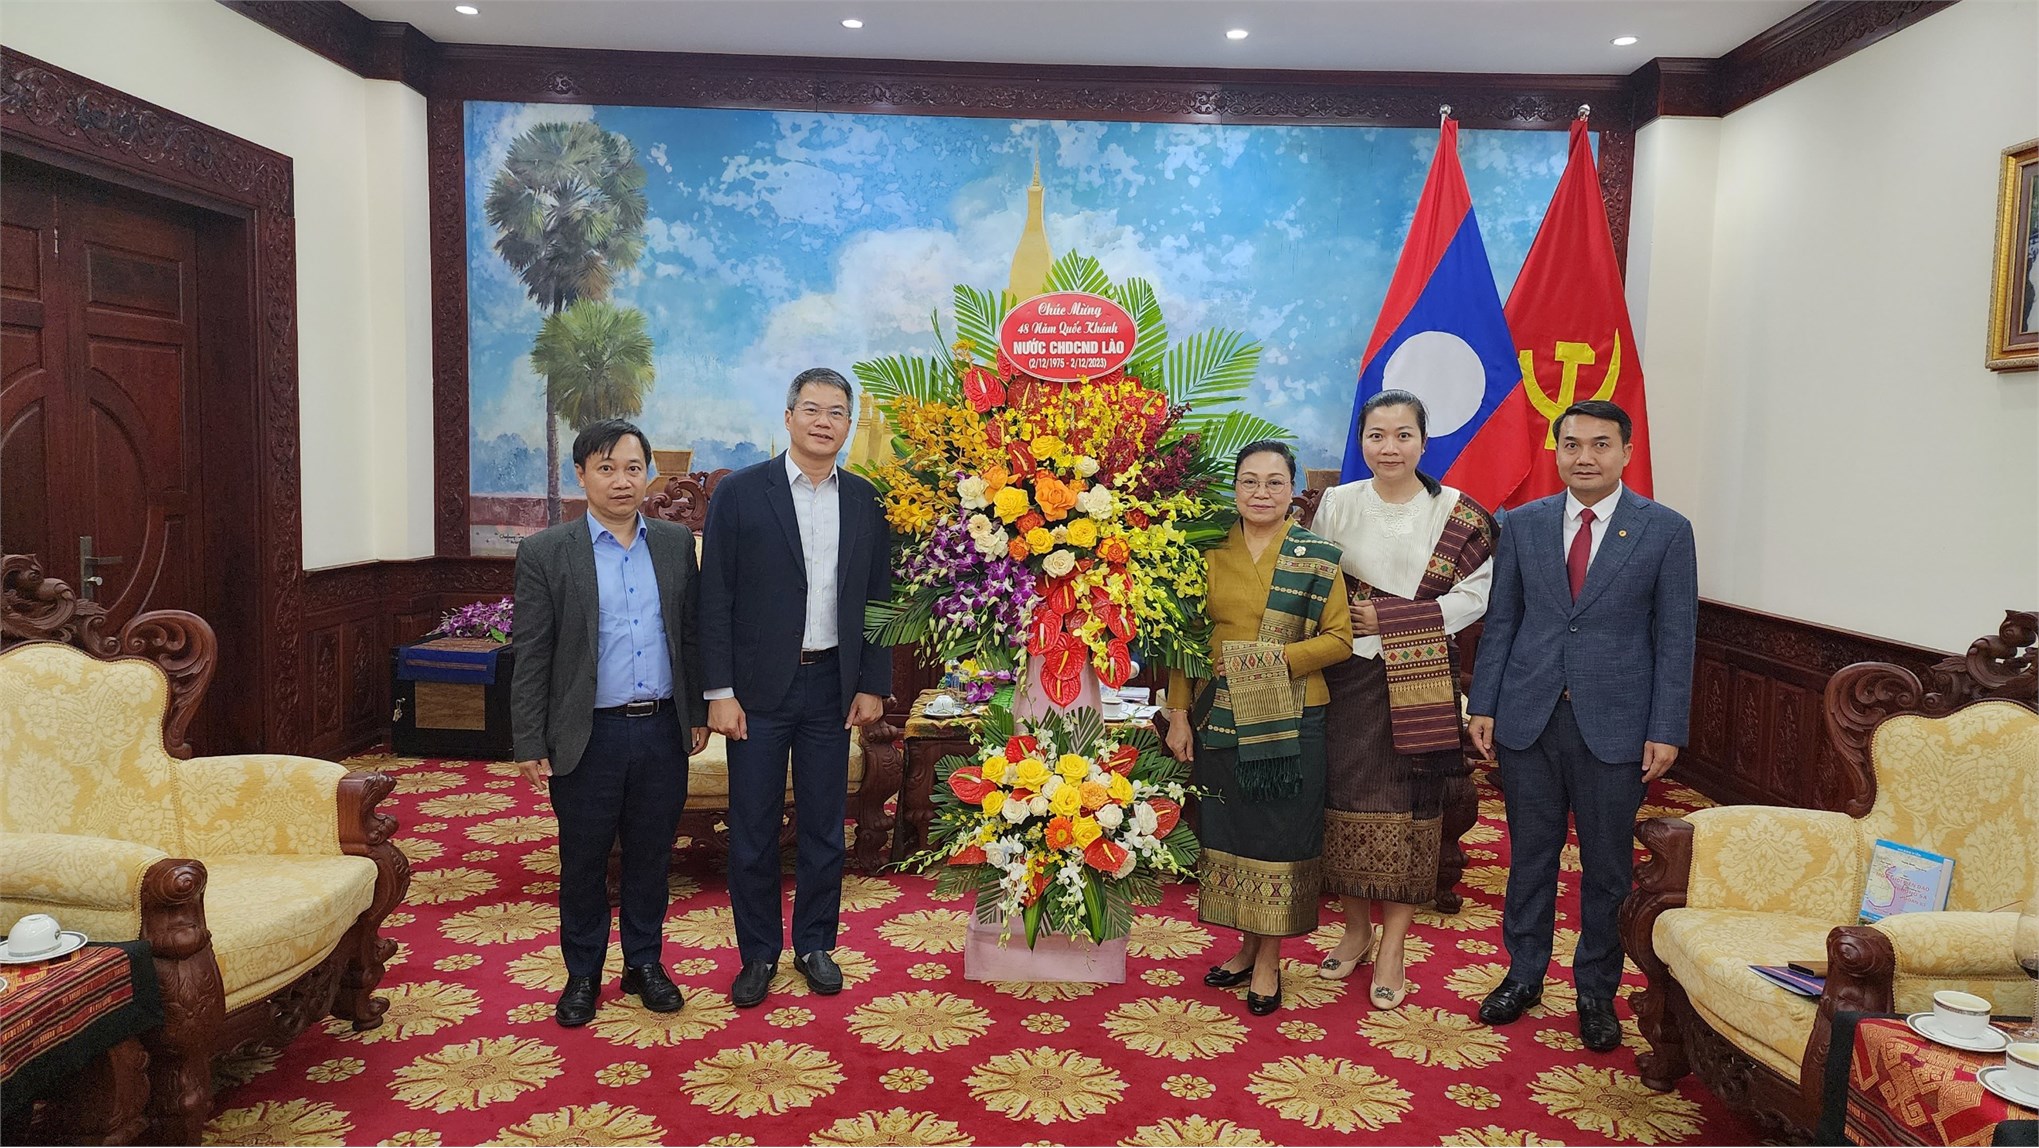 Trường Đại học Công nghiệp Hà Nội chúc mừng Quốc khánh Lào